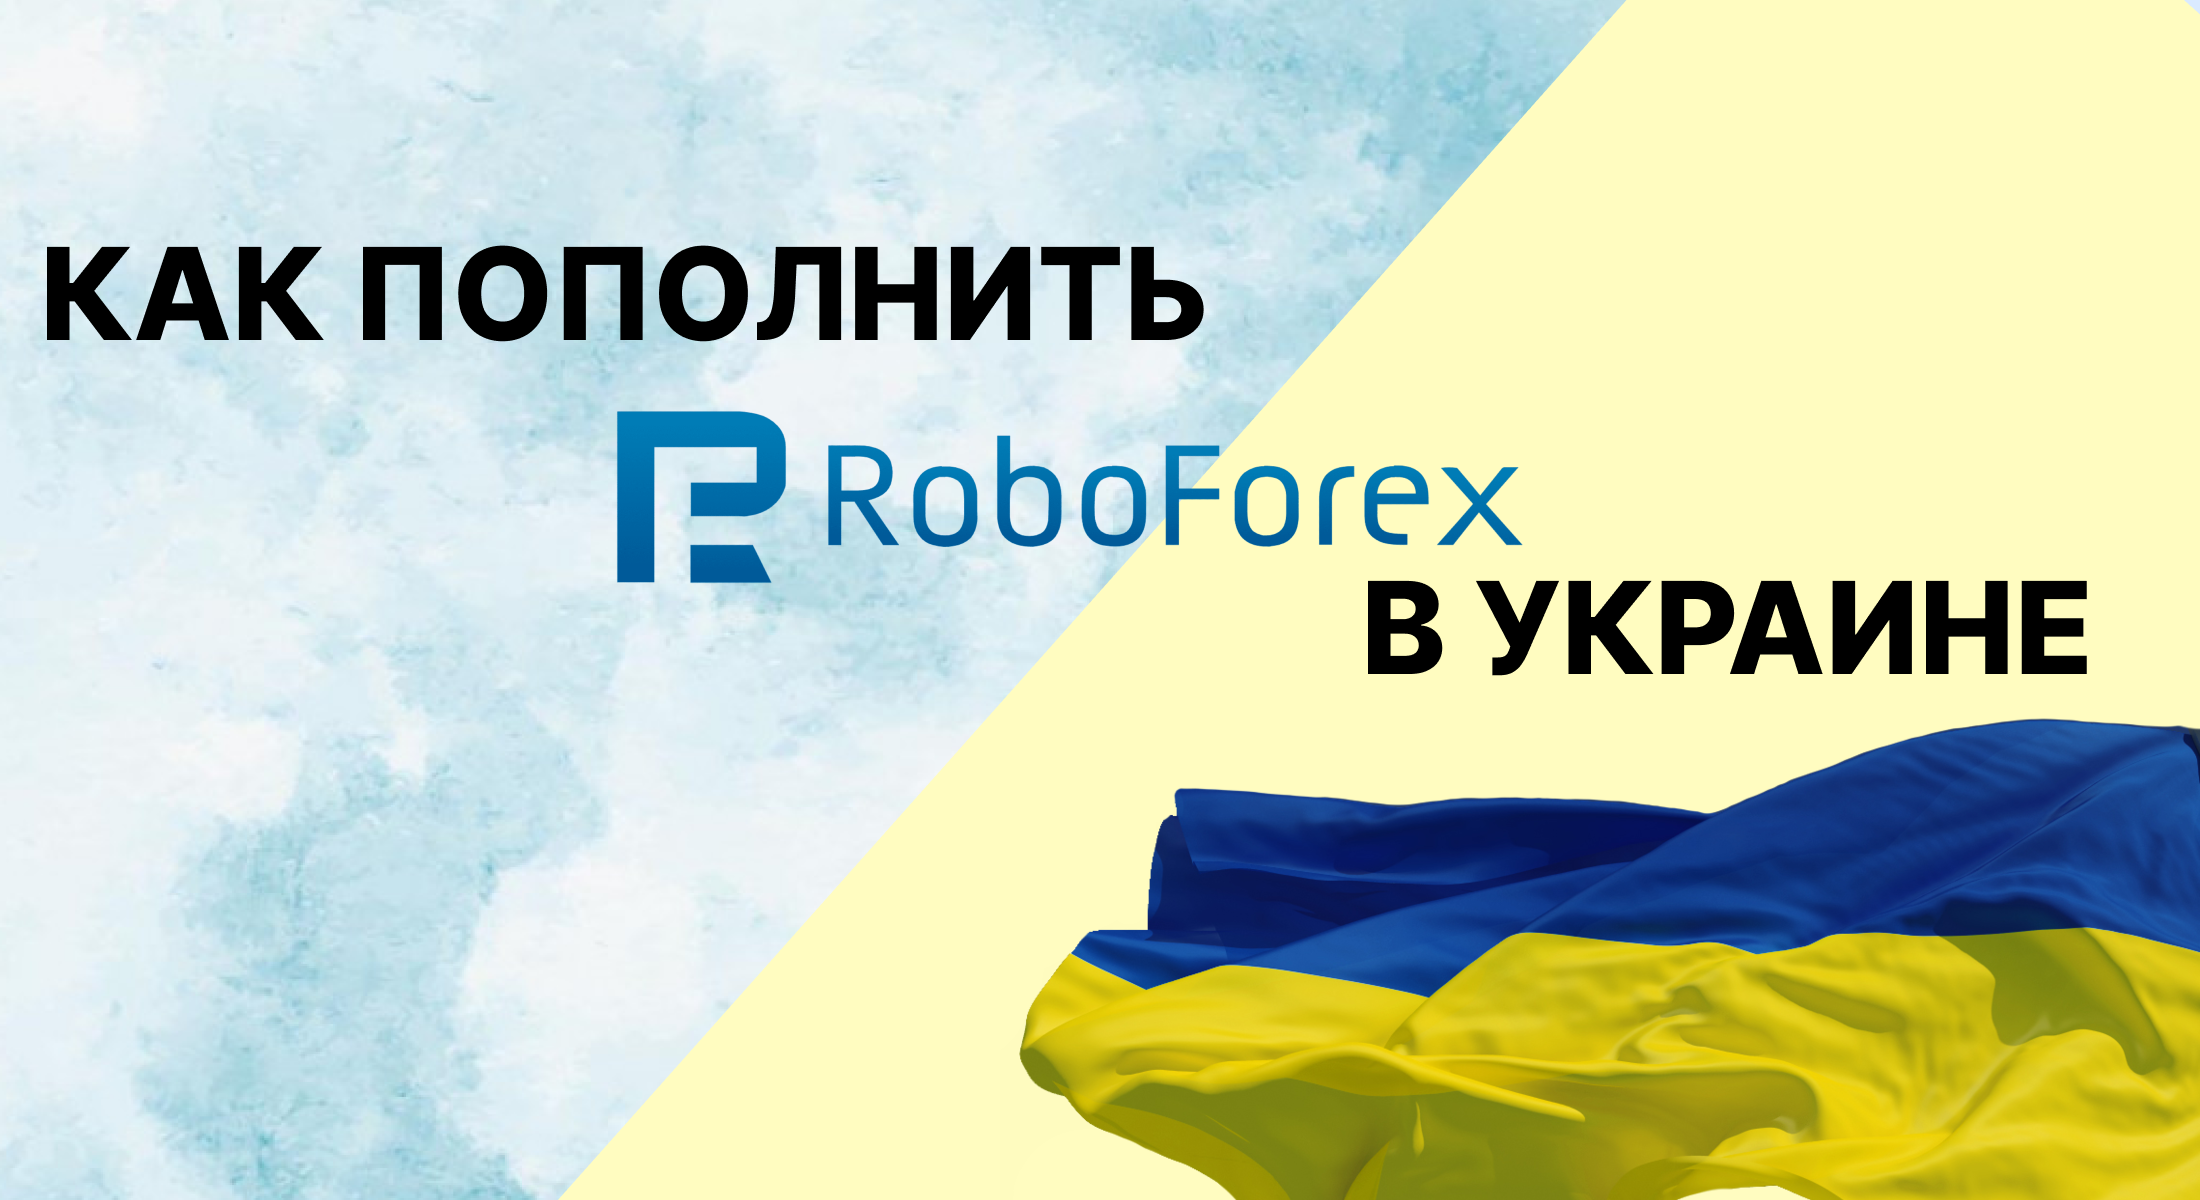 Как пополнить Робофорекс в Украине